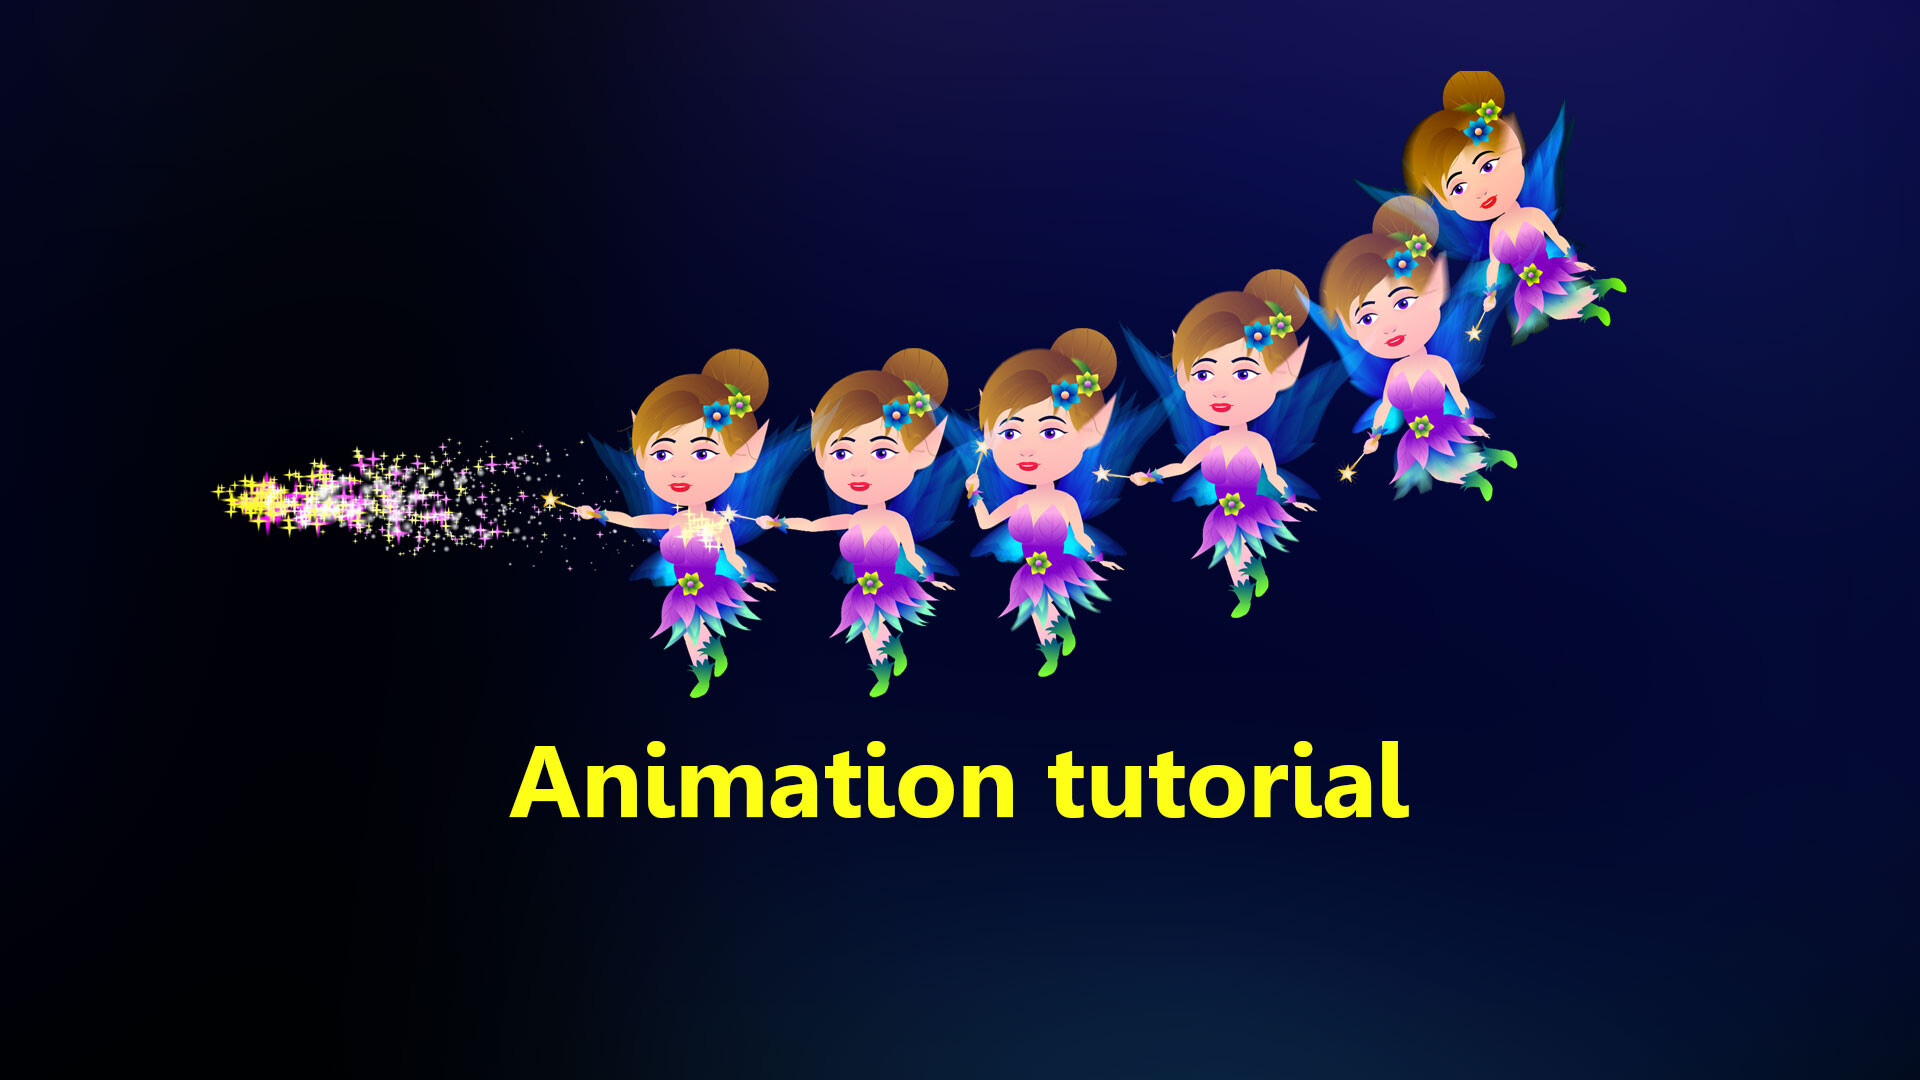 Fairy character animation tutorial - ArtStation